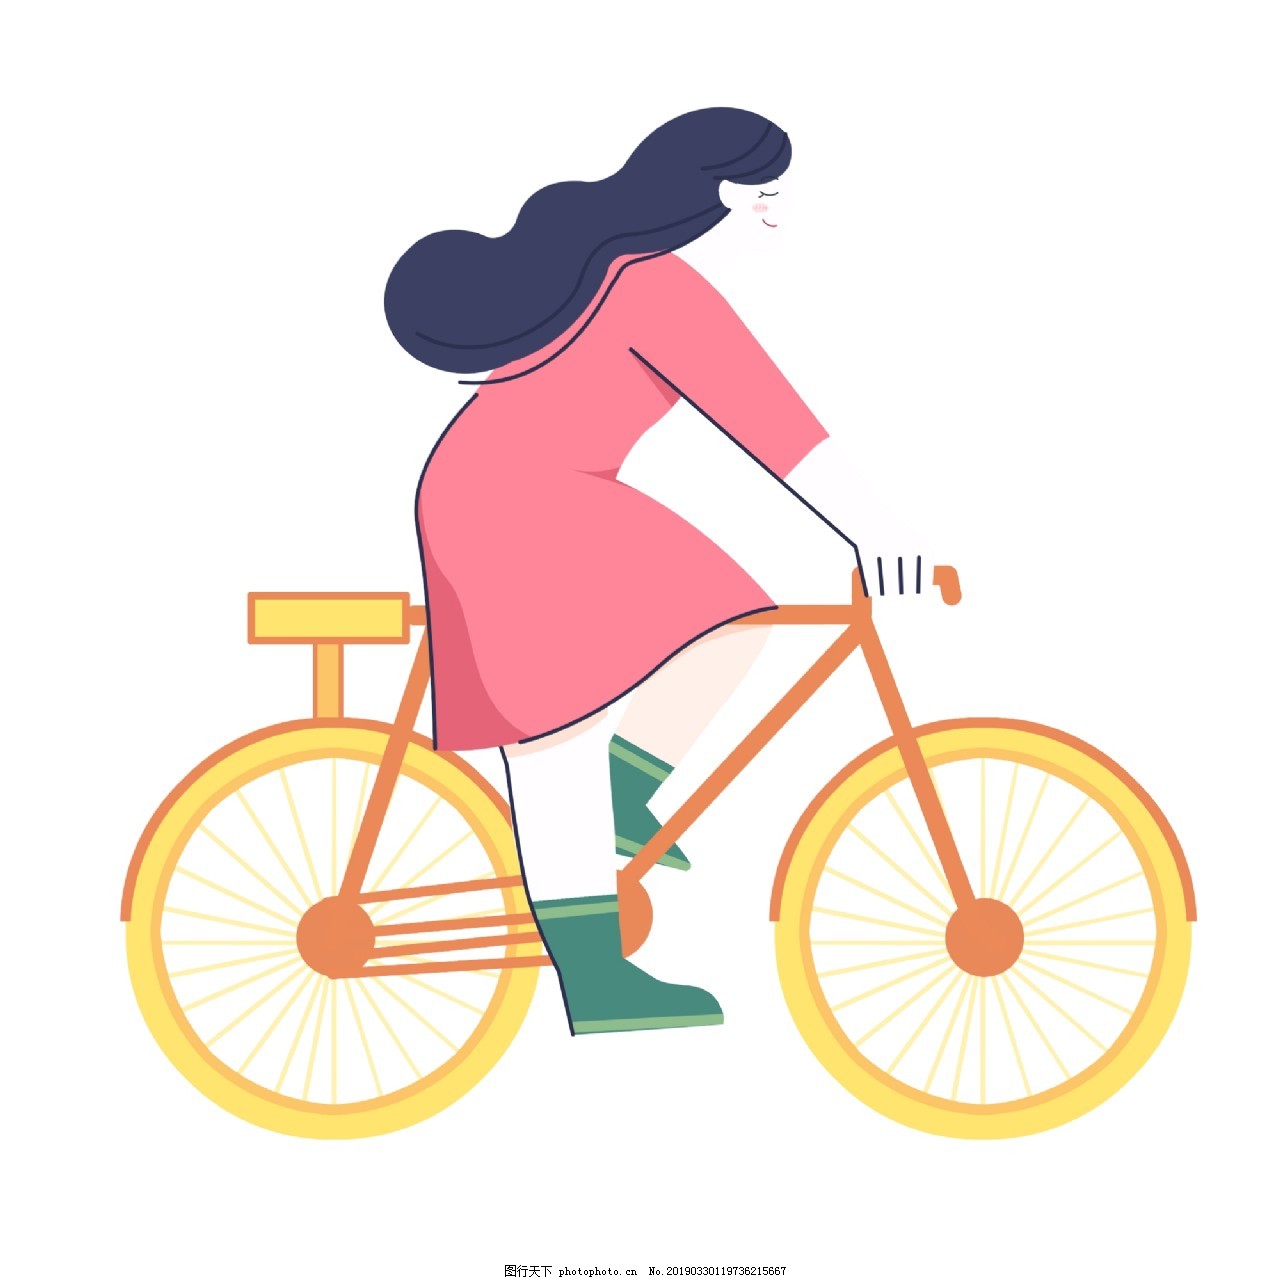 可爱卡通骑自行车的女生图片_动漫卡通_插画绘画-图行天下素材网